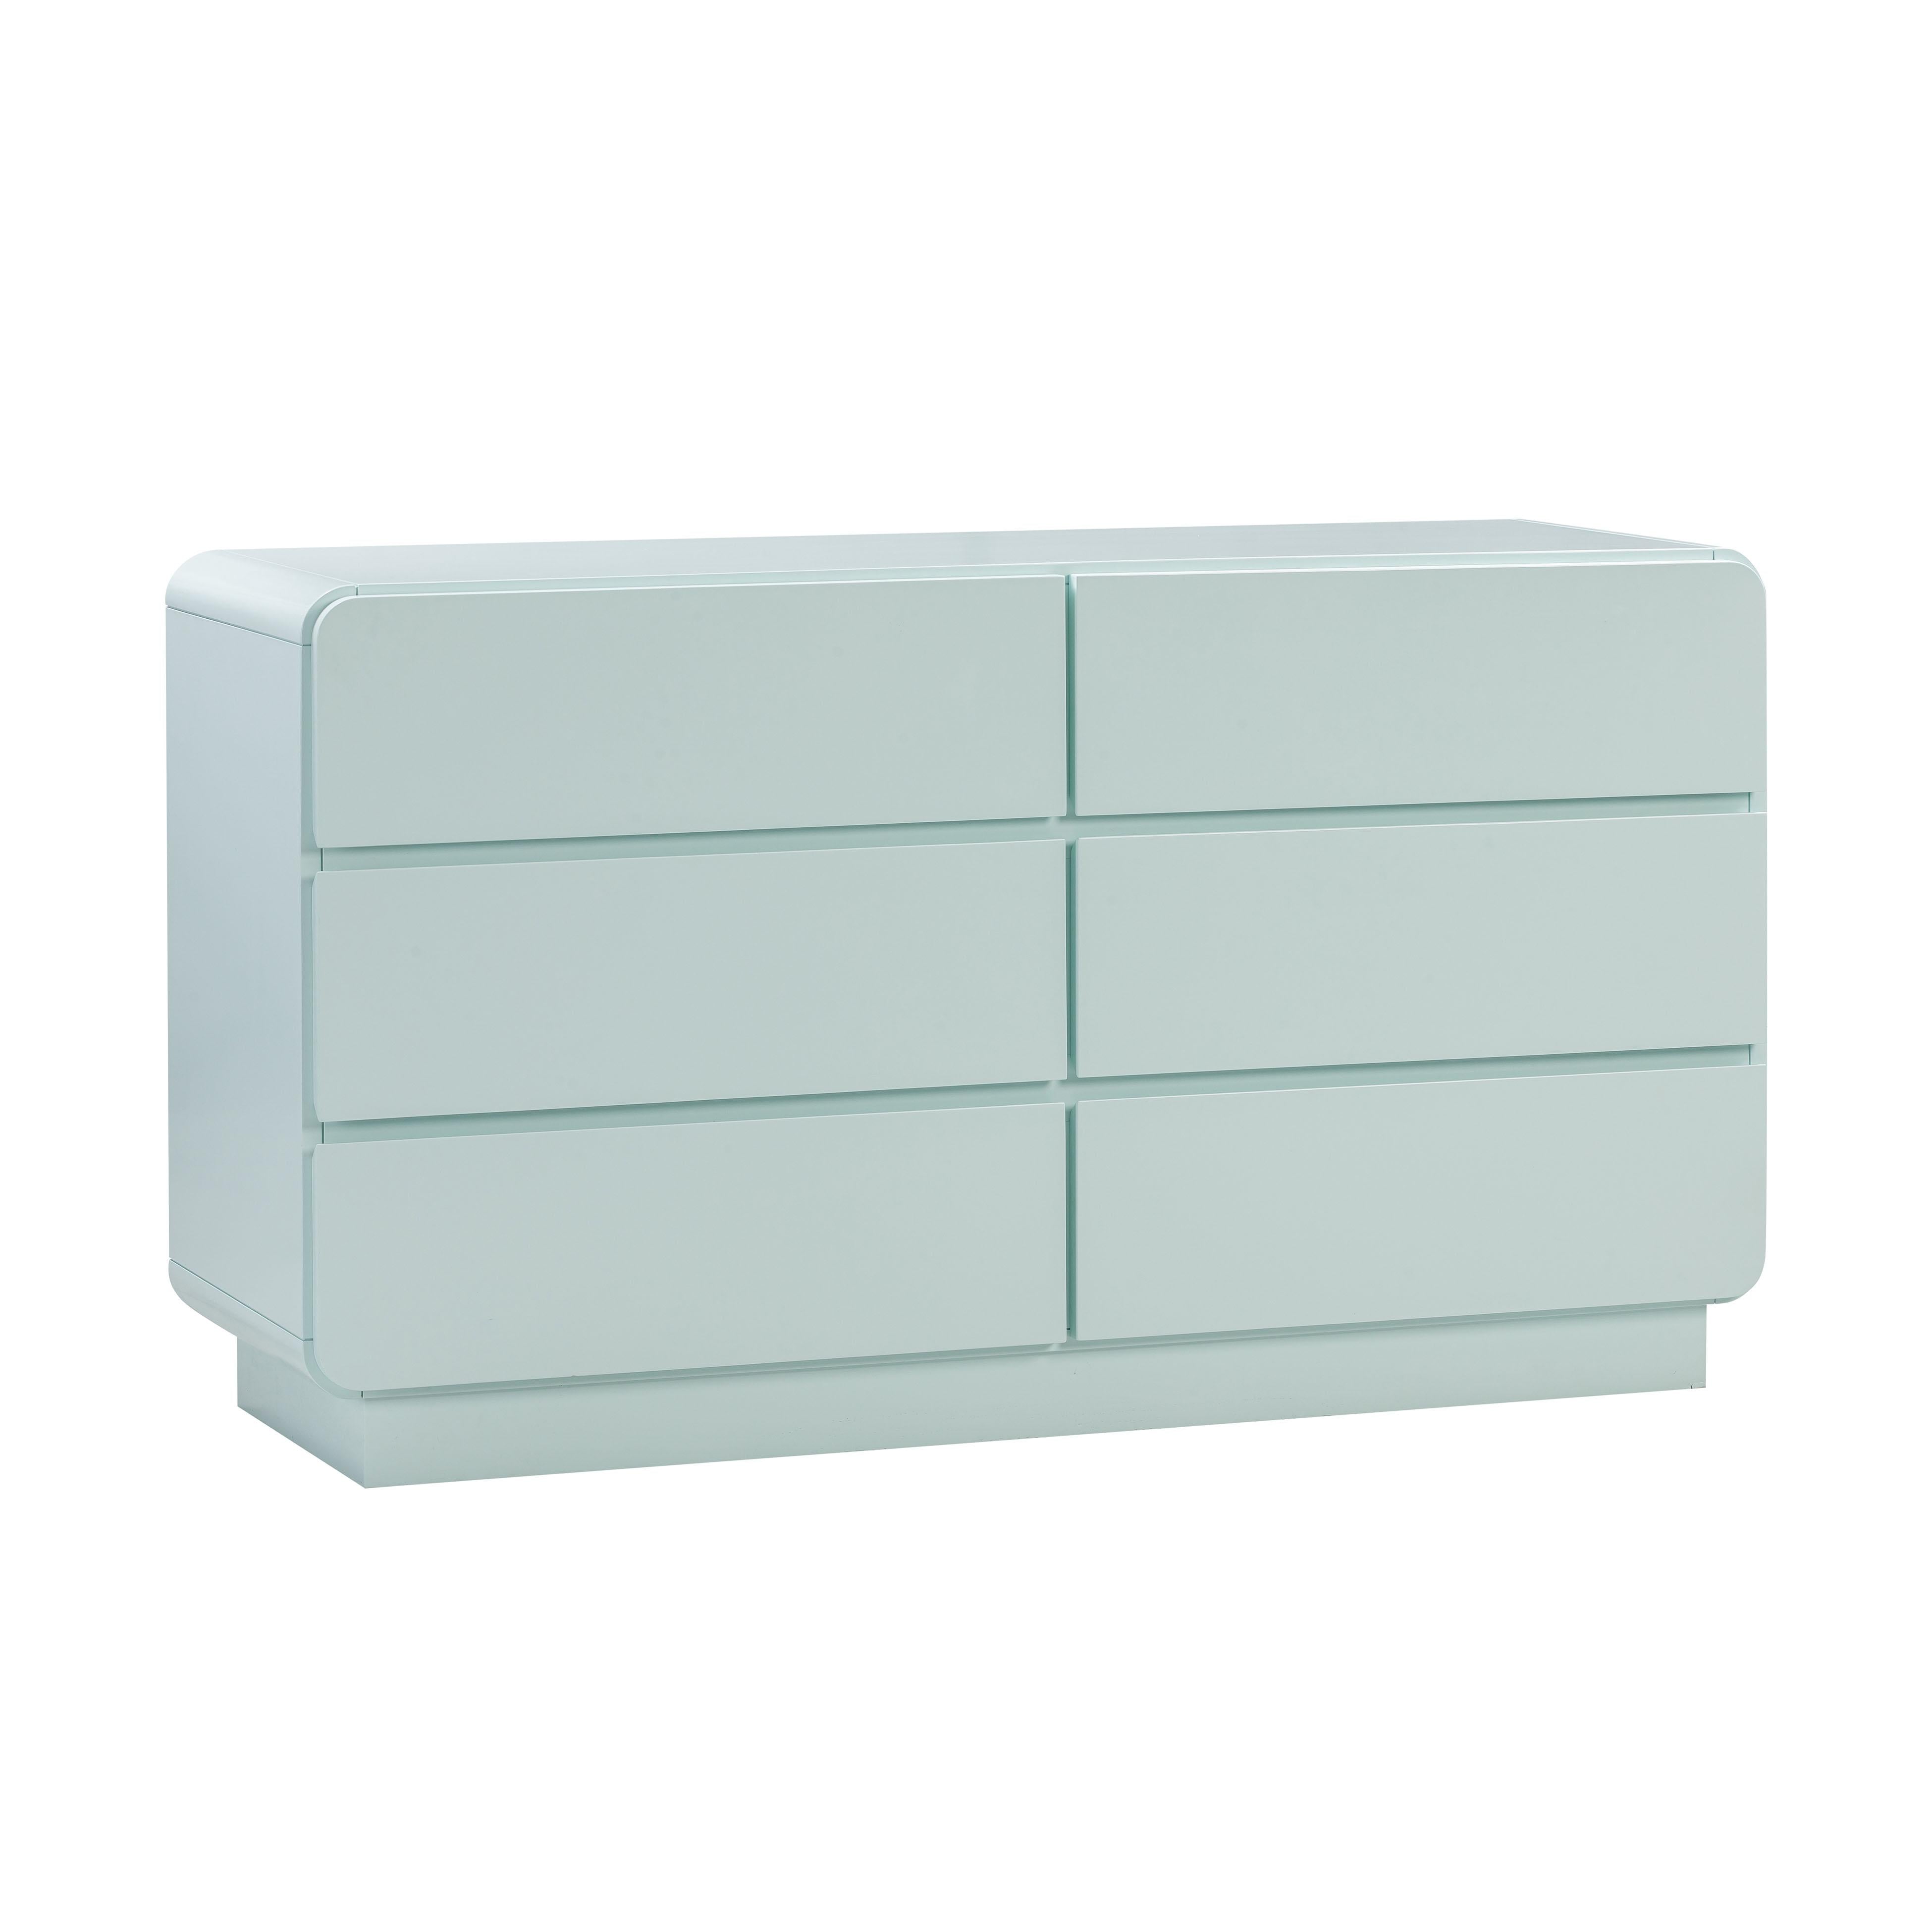 Tov Furniture Nightstands - Sagura Blue 6-Drawer Dresser